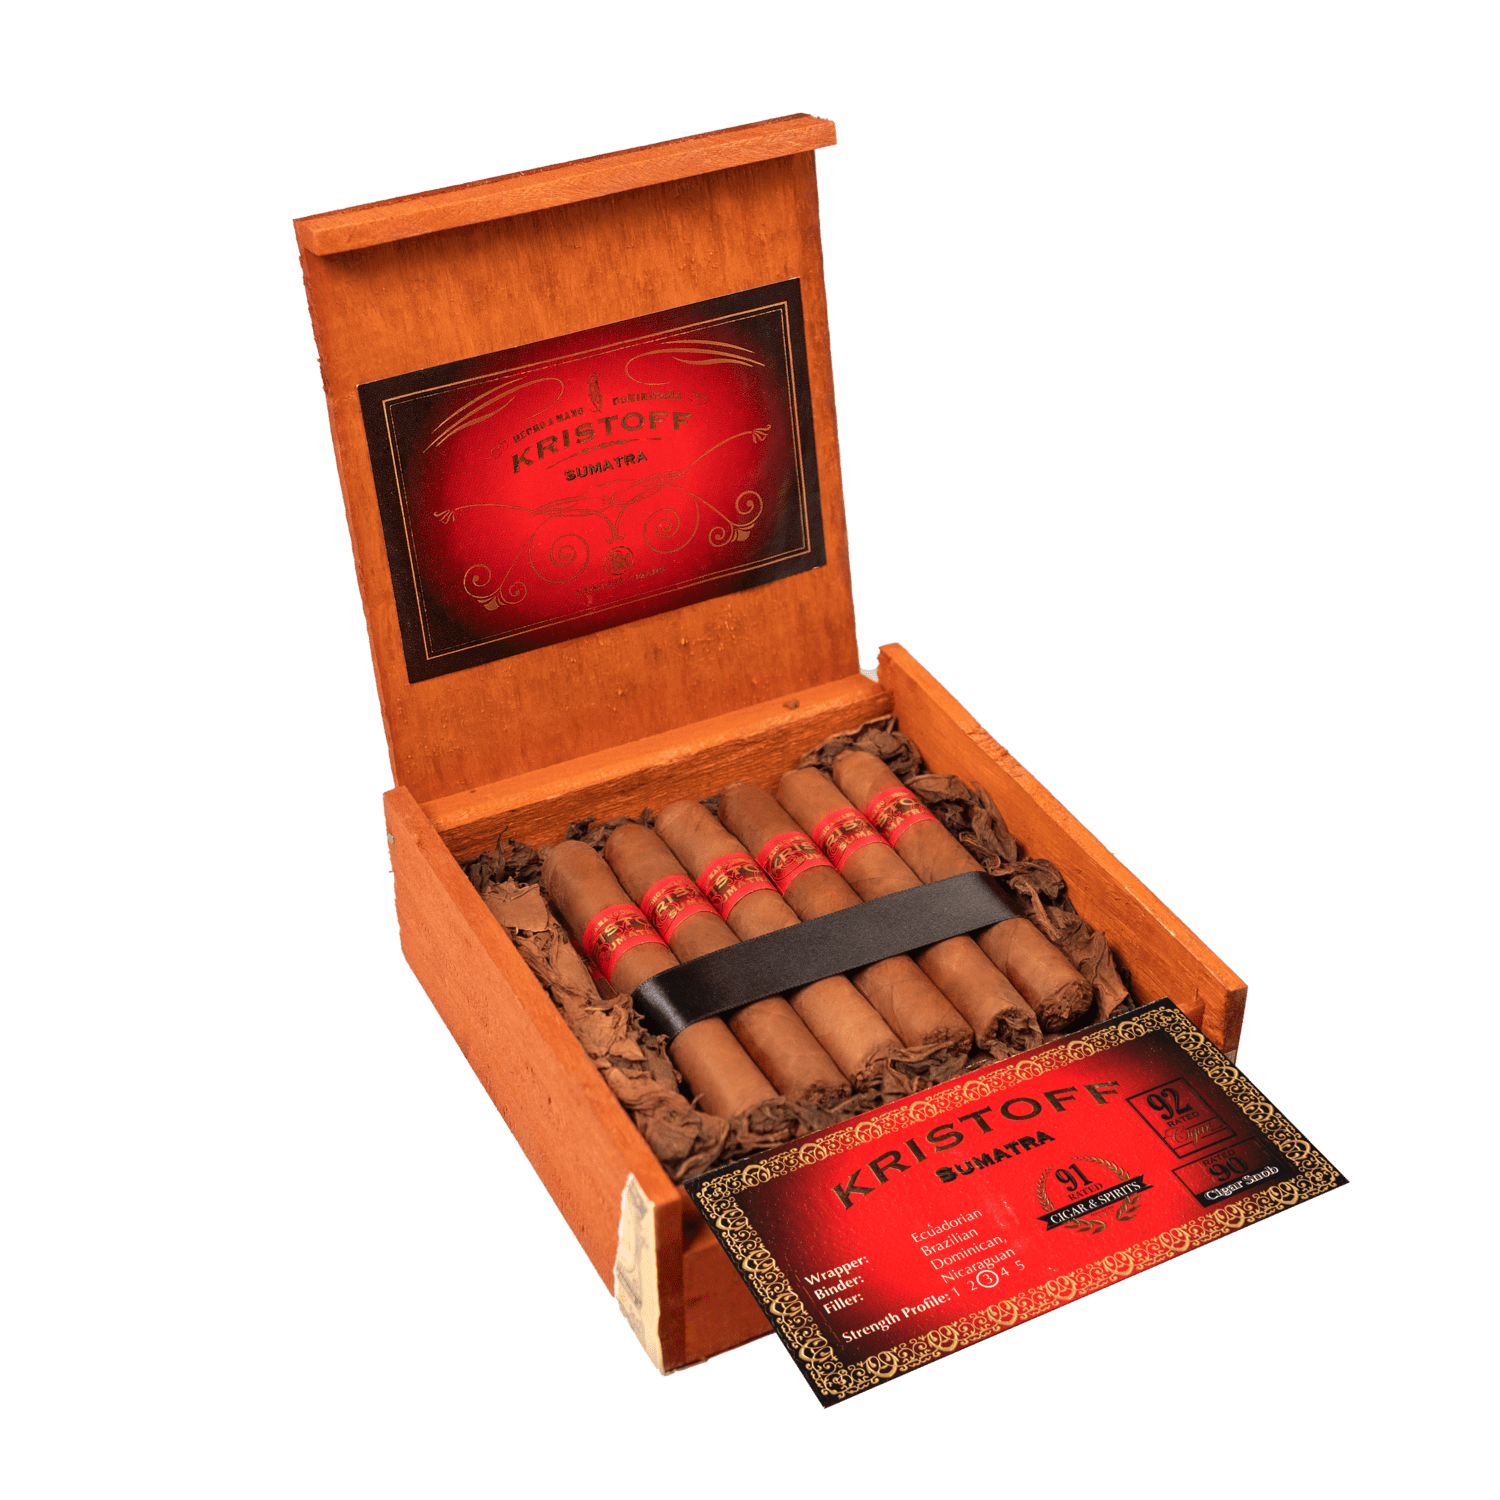 Kristoff Cigars: Sumatra Highly Rated Cigar